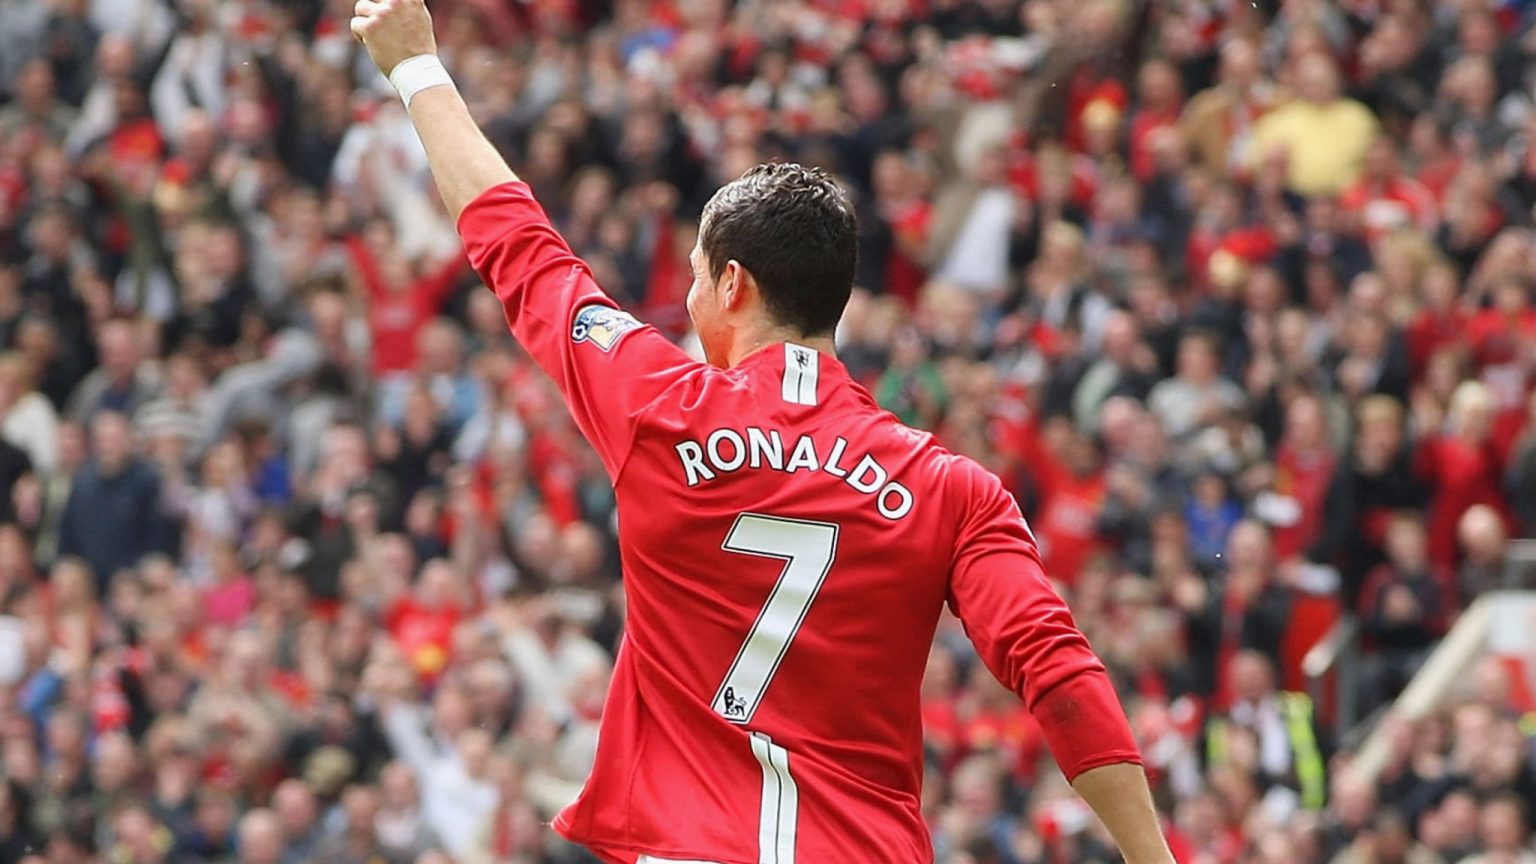 Ronaldo-1-1536×864